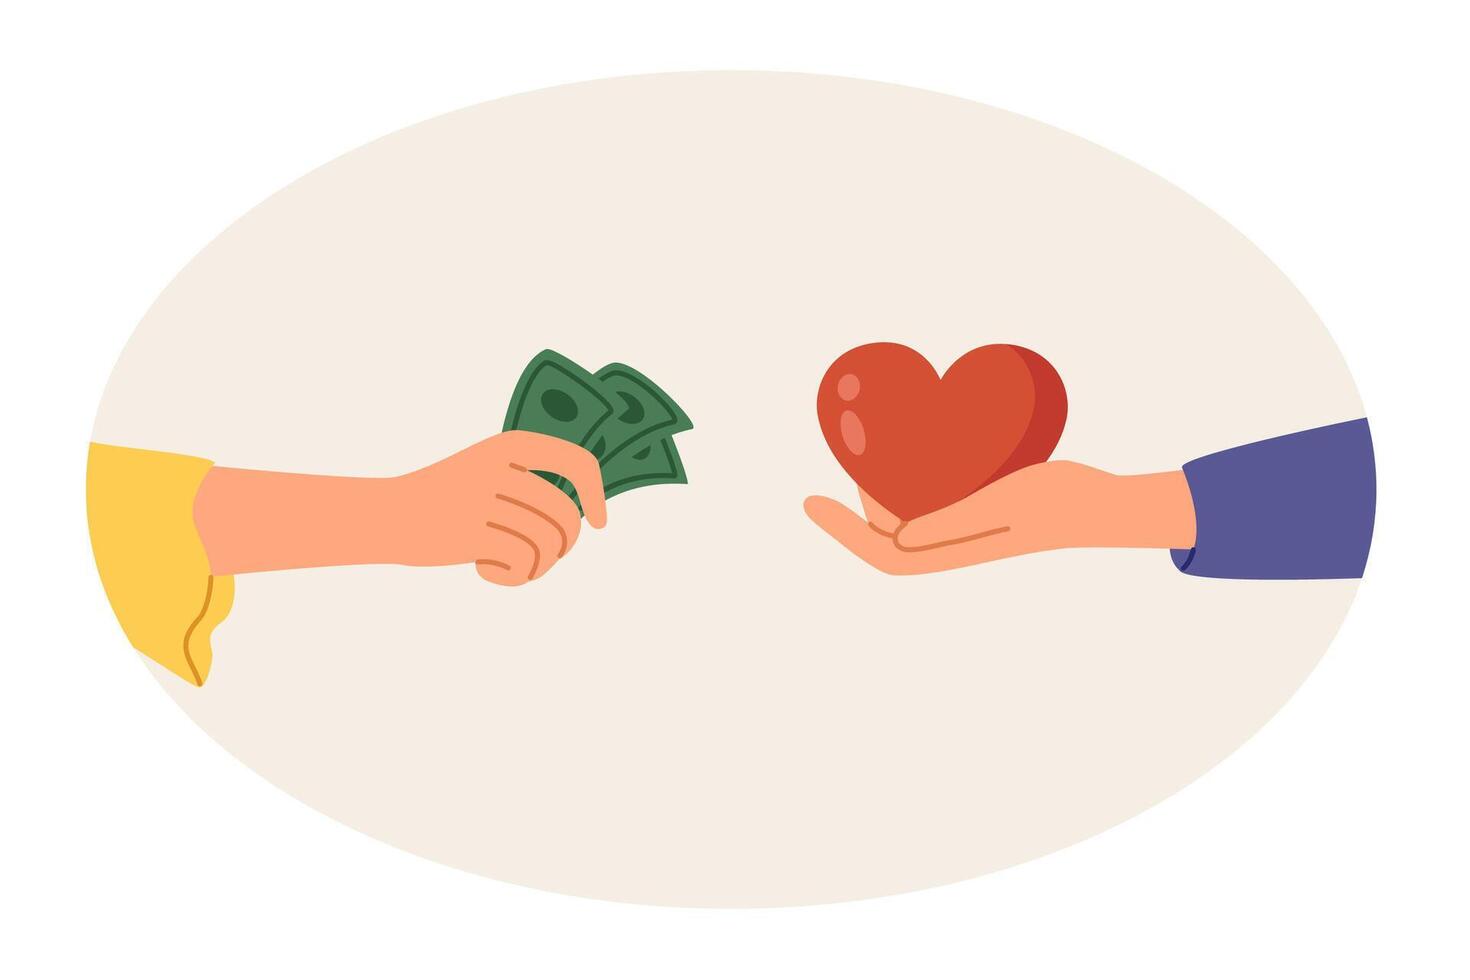 uppköp kärlek med pengar och relationer byggd på finansiell ömsesidig fördel, med händer av människor med hjärtan och kontanter. liknelse av ekonomisk investeringar till skapa stark familj med kärleksfull makar vektor